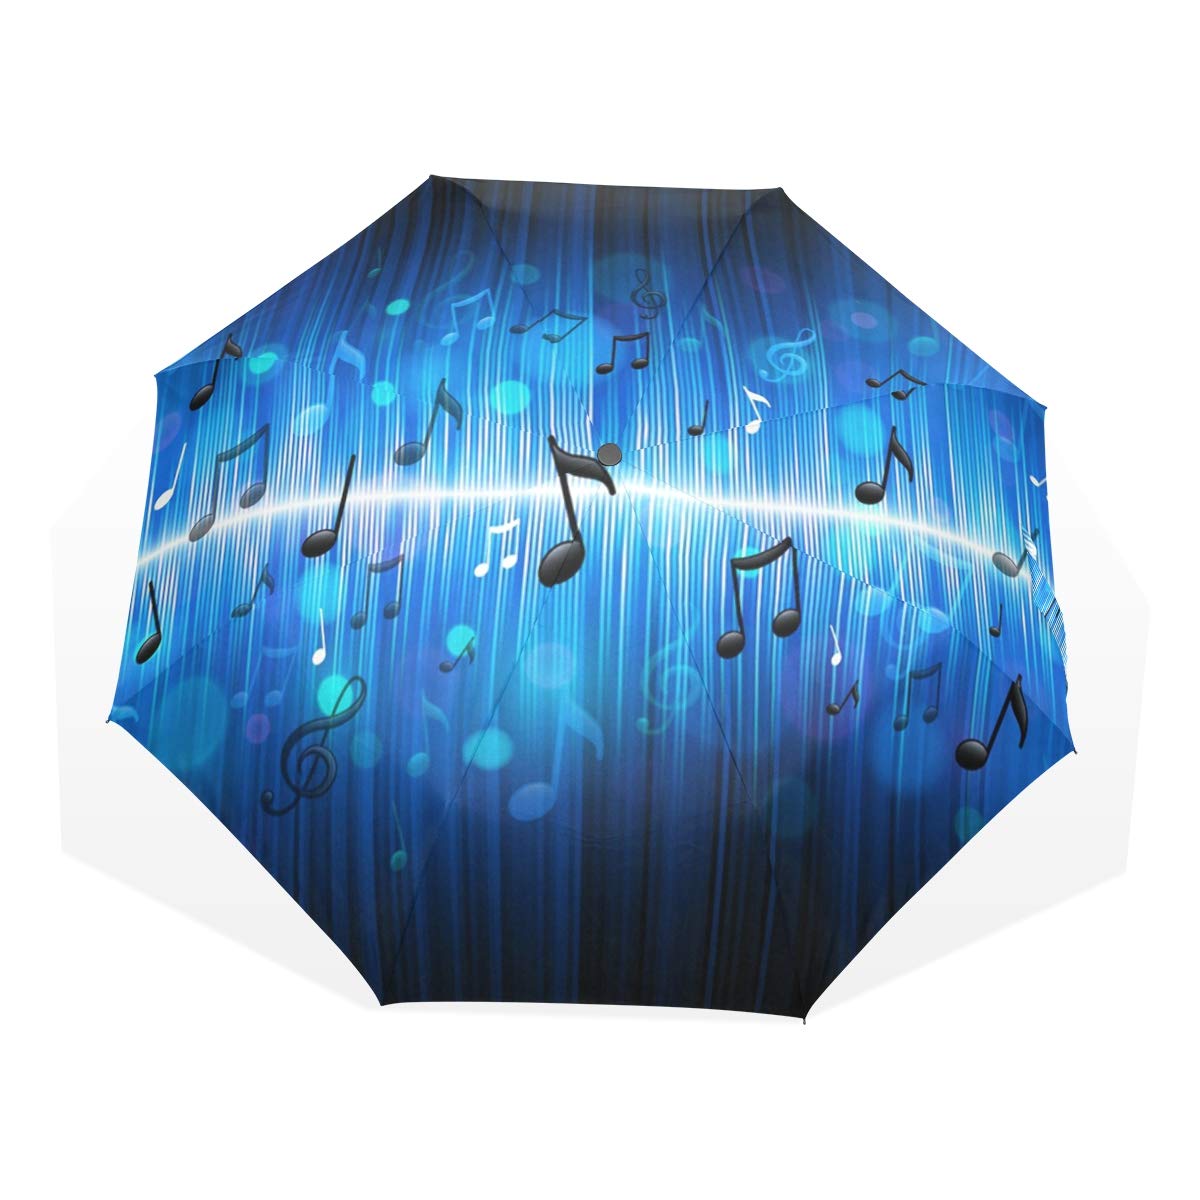 ISAOA Automatischer Reise-Regenschirm,kompakt,faltbar,Mode-niedliches stilvolles personalisiert,Winddicht Stockschirm,Ultraleicht,UV-Schutz,Regenschirm für Damen,Herren und Kinder